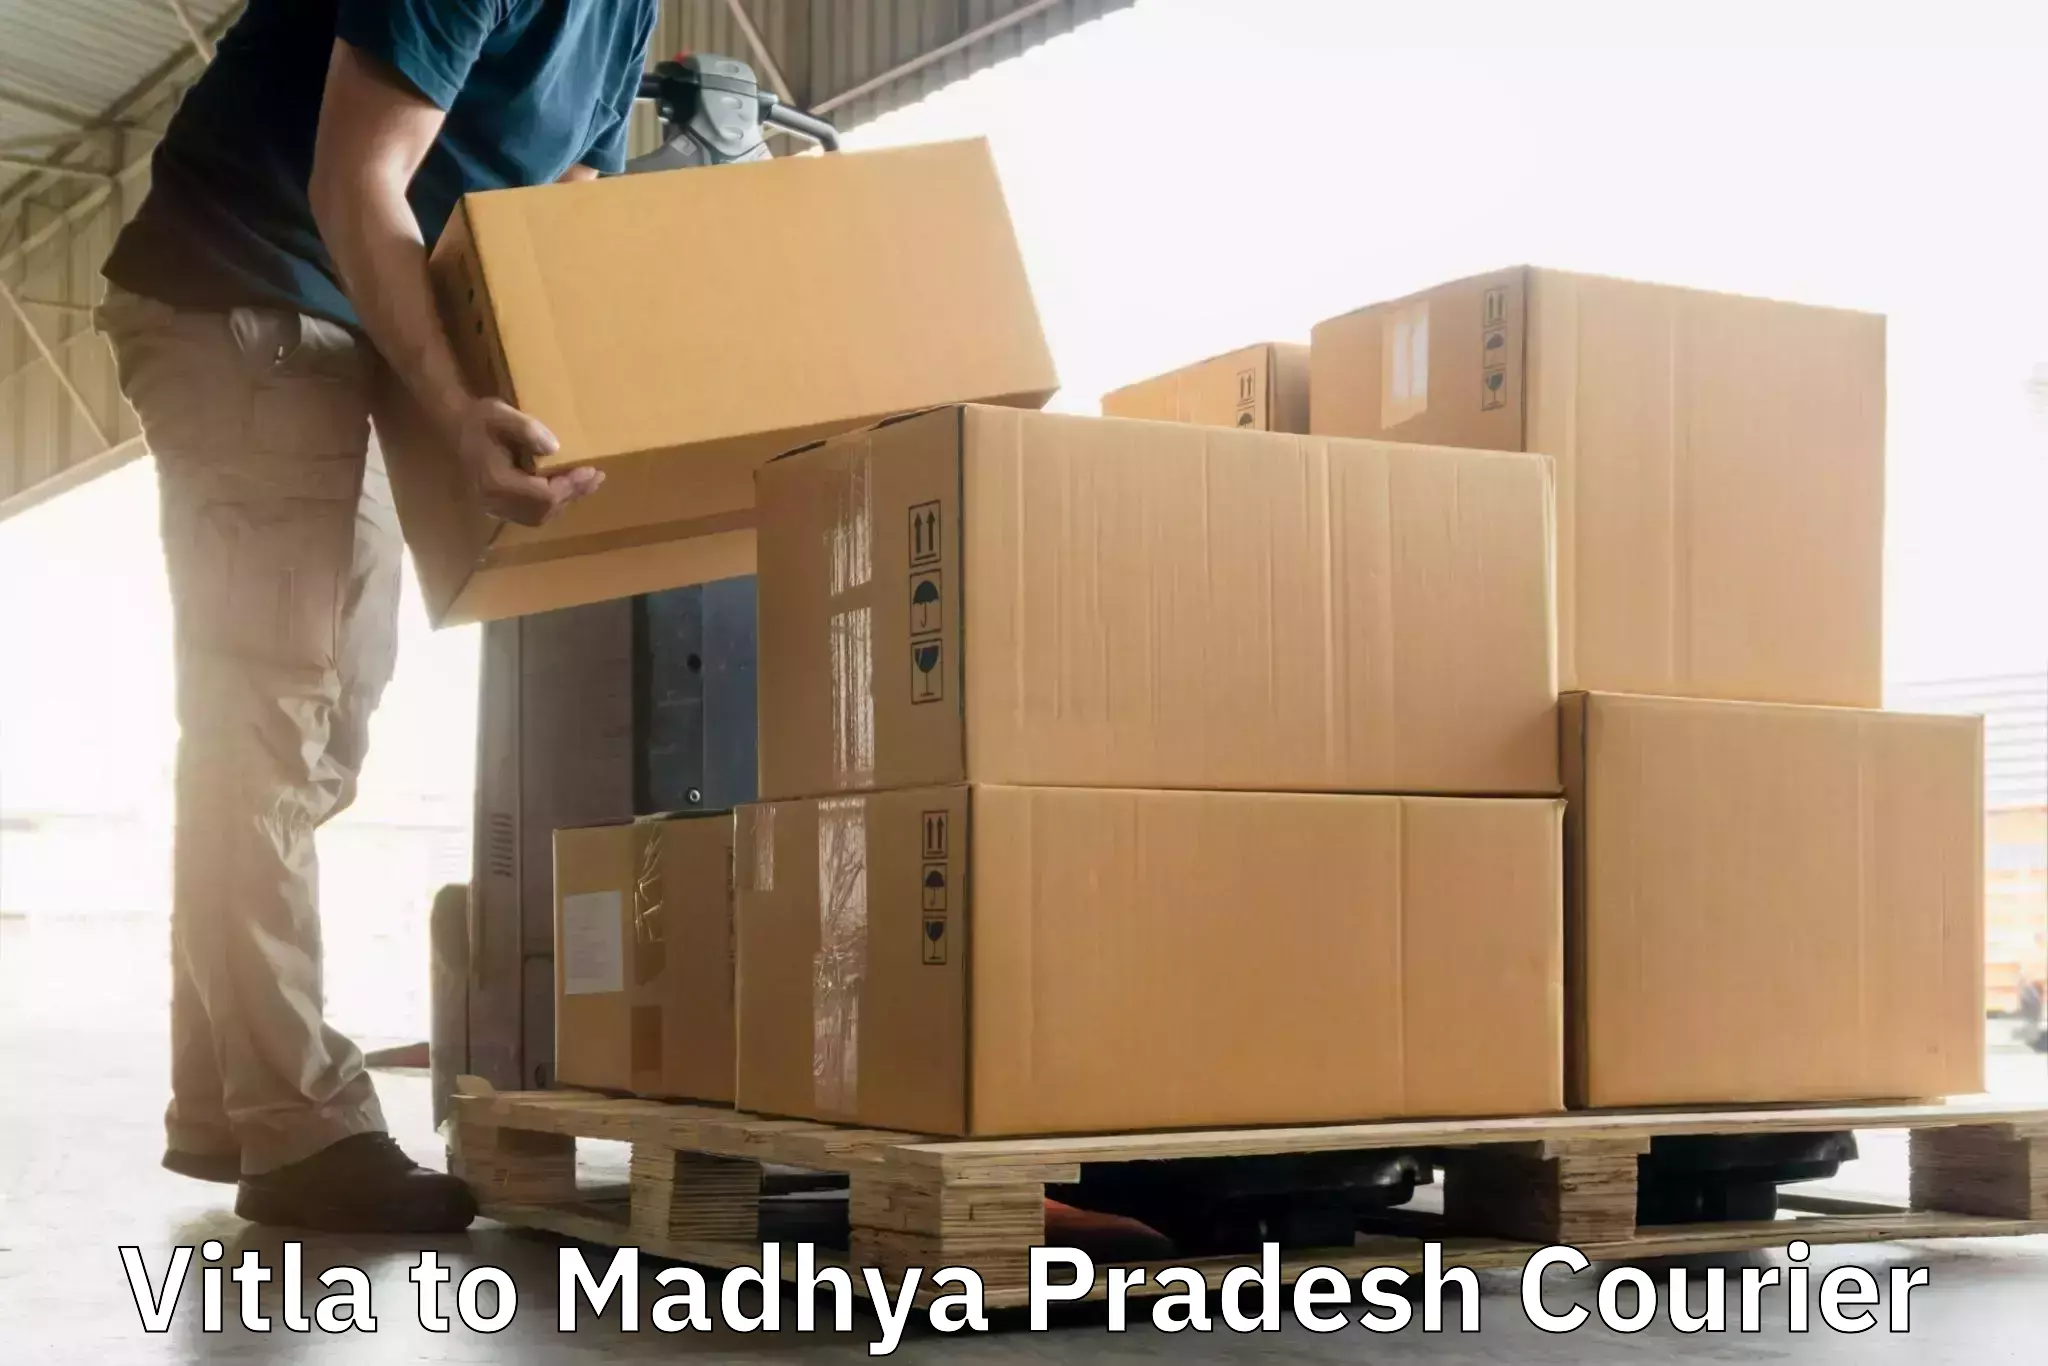 High-priority parcel service Vitla to Malanjkhand